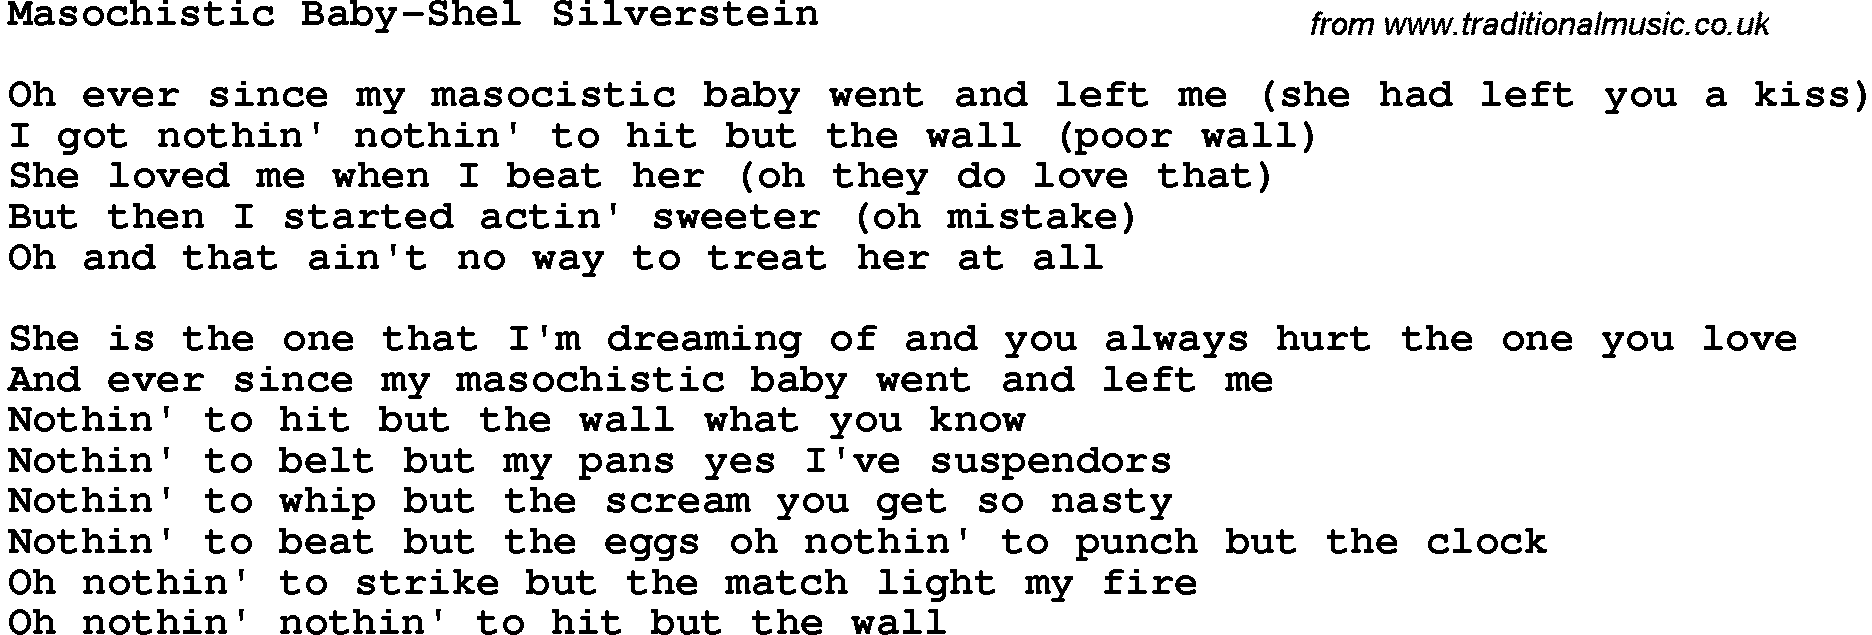 Novelty song: Masochistic Baby-Shel Silverstein lyrics